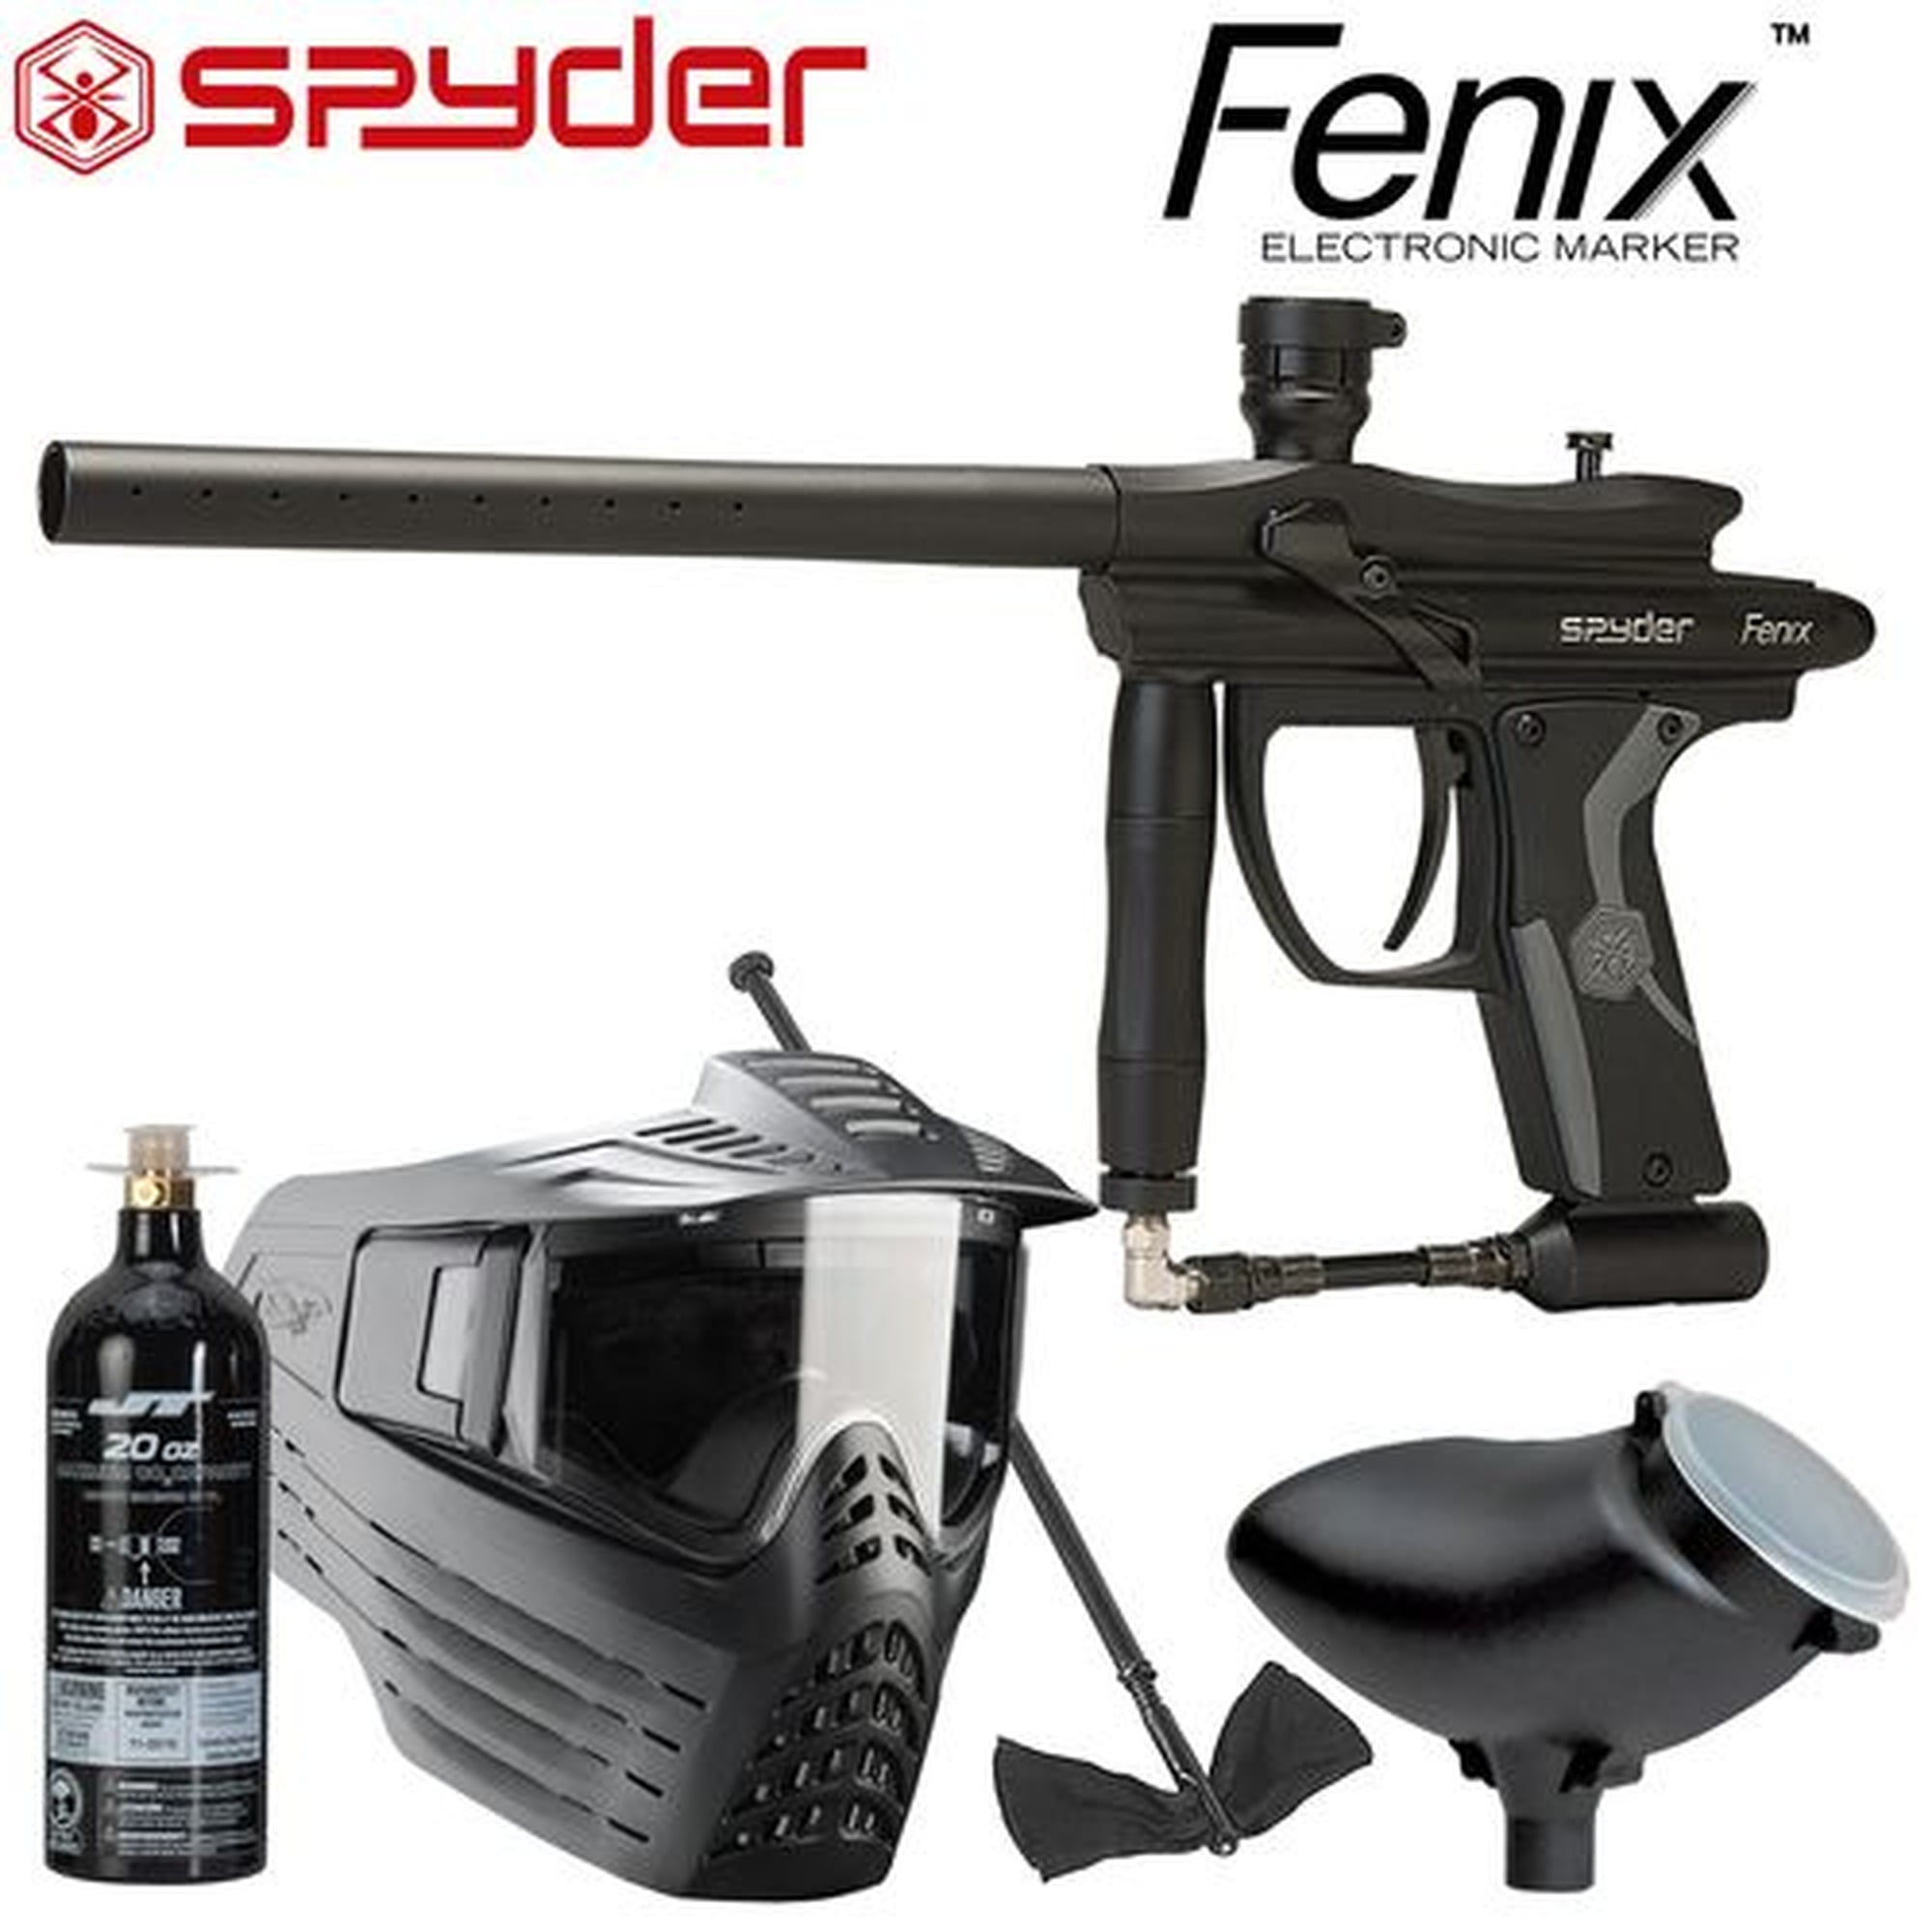 NEW SPYDER FENIX EPIC PAINTBALL GUN PACKAGE KIT BLACK 